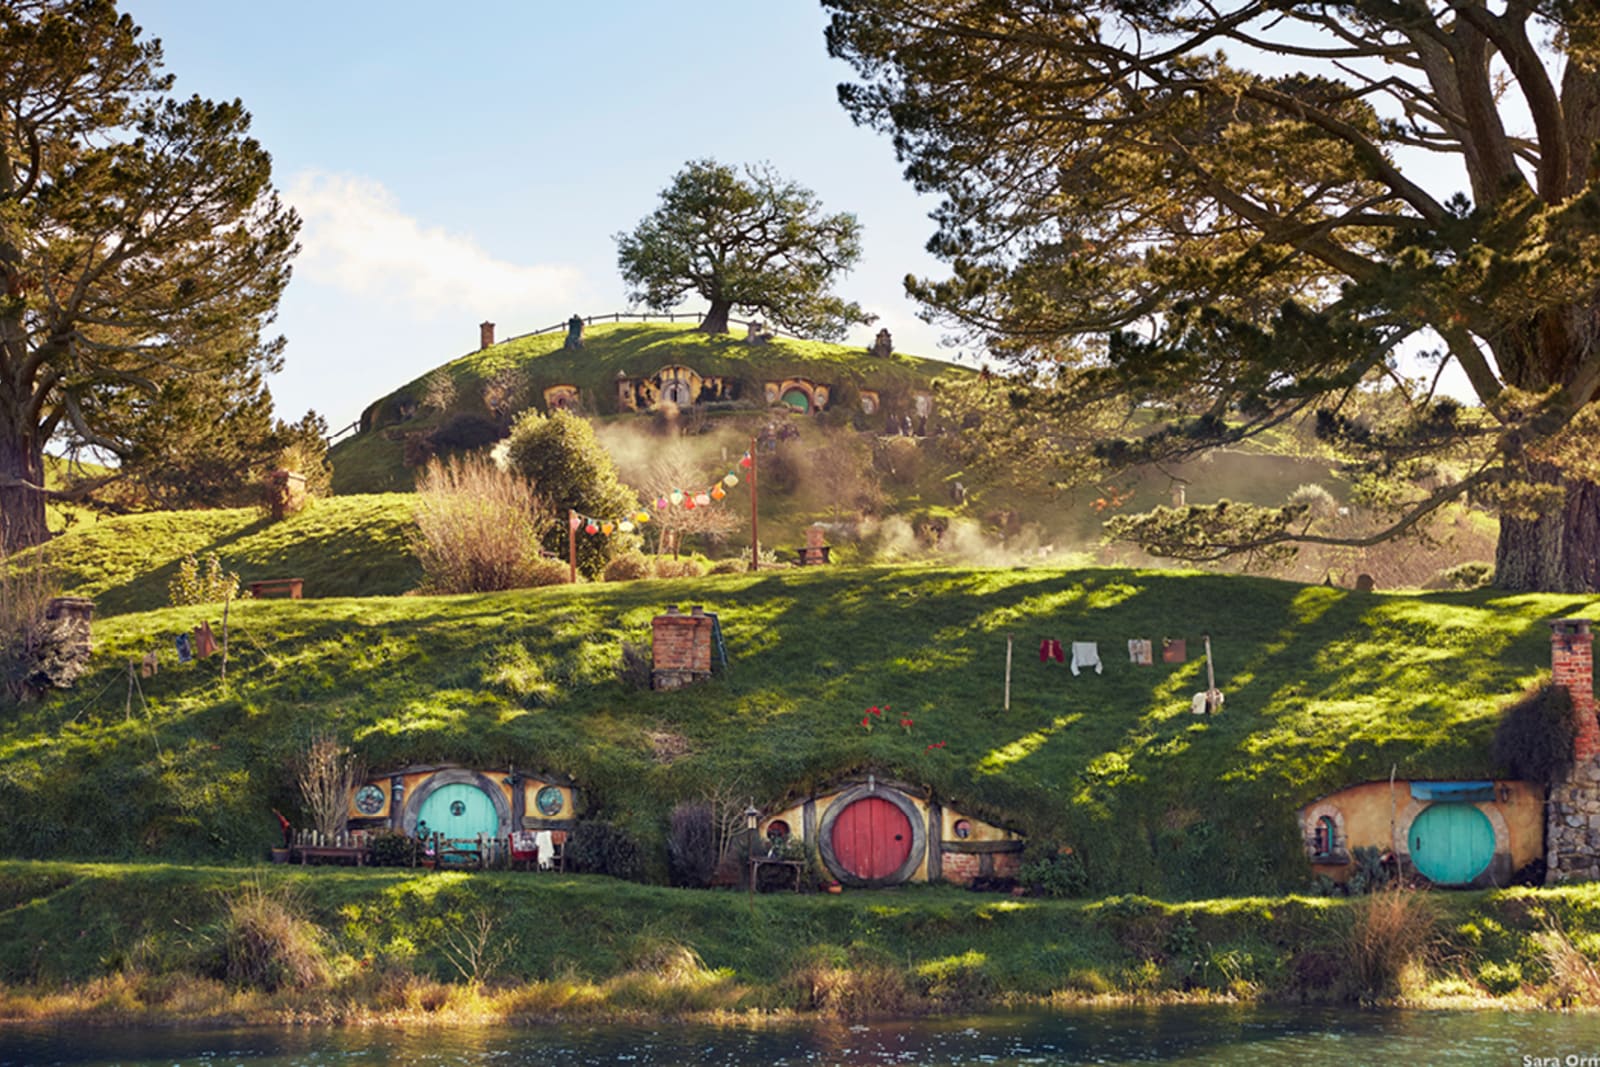 Hobbit homes at the Hobbiton Movie Set in Matamata